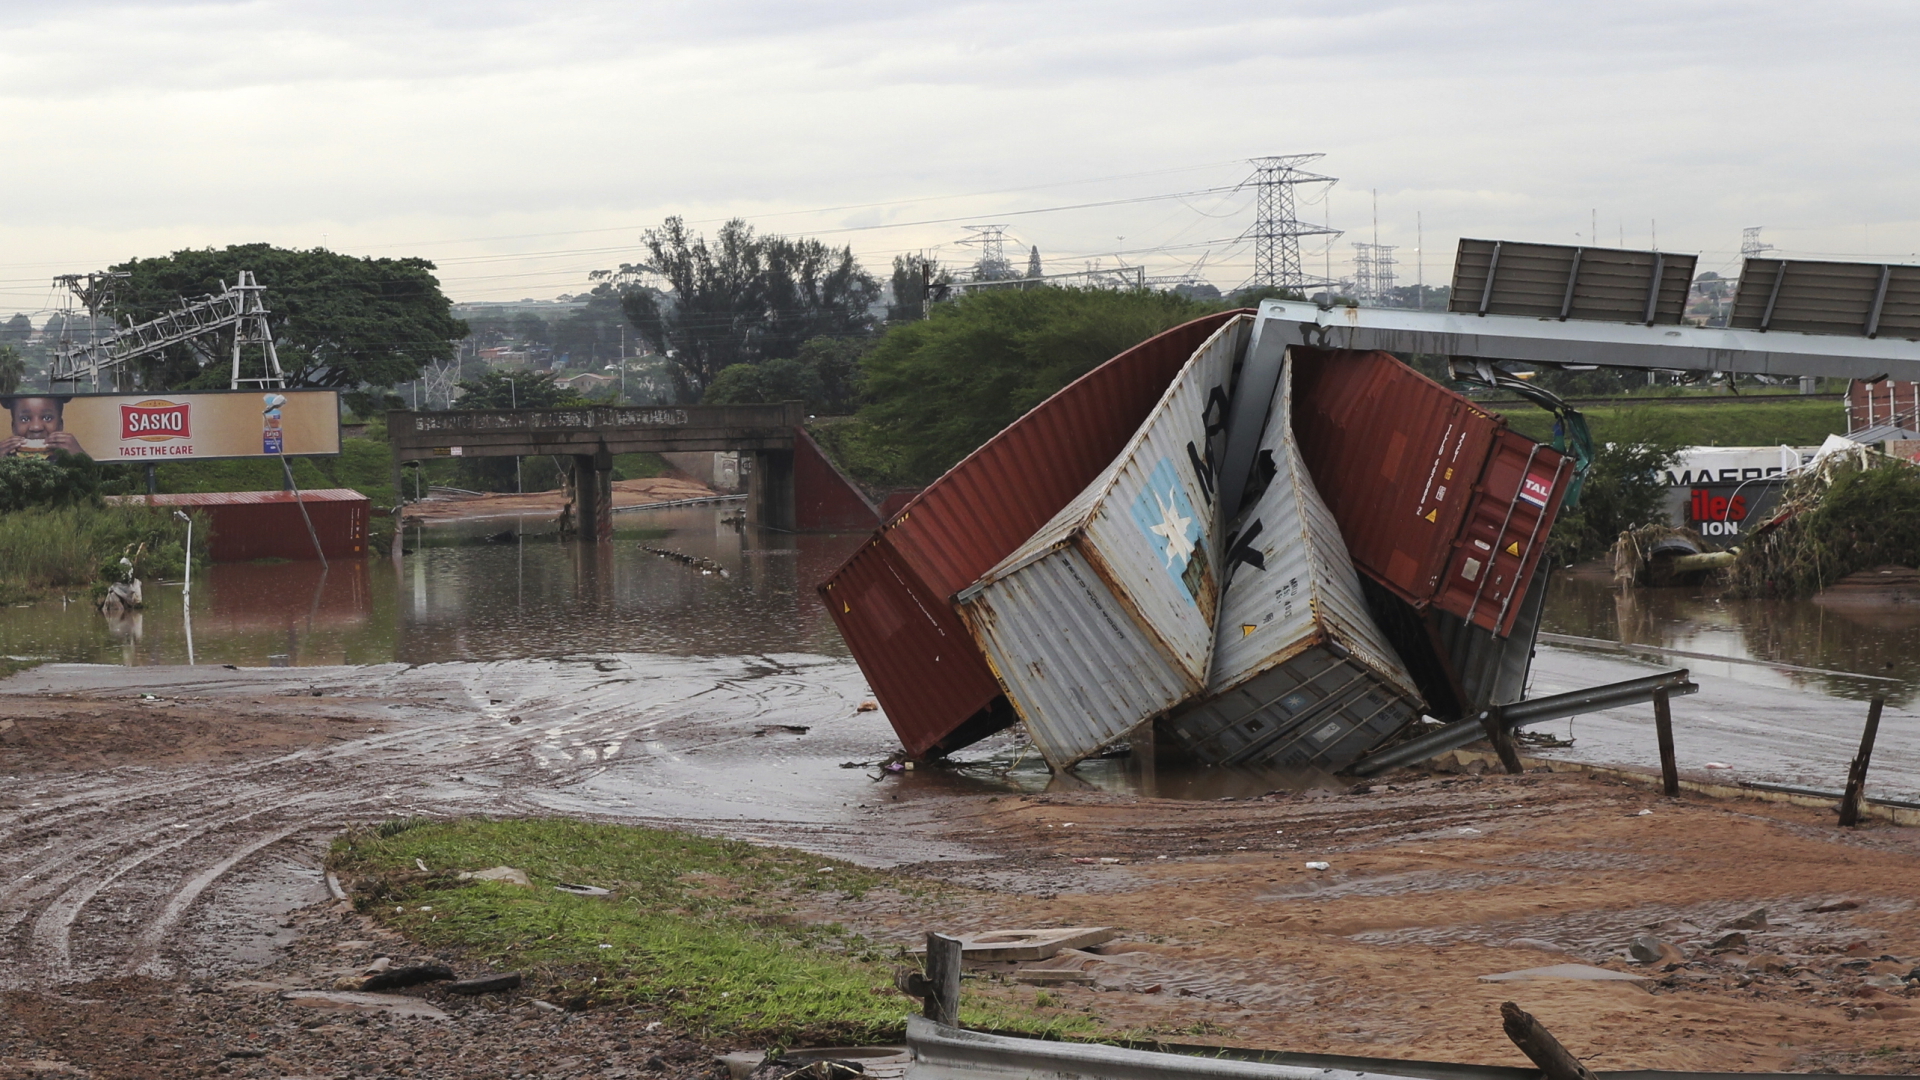 Beschädigte Schiffscontainer im südafrikanischen Durban, die durch ungewöhnlich heftigen Niederschlägen weggetragen und zerstört wurden. | dpa